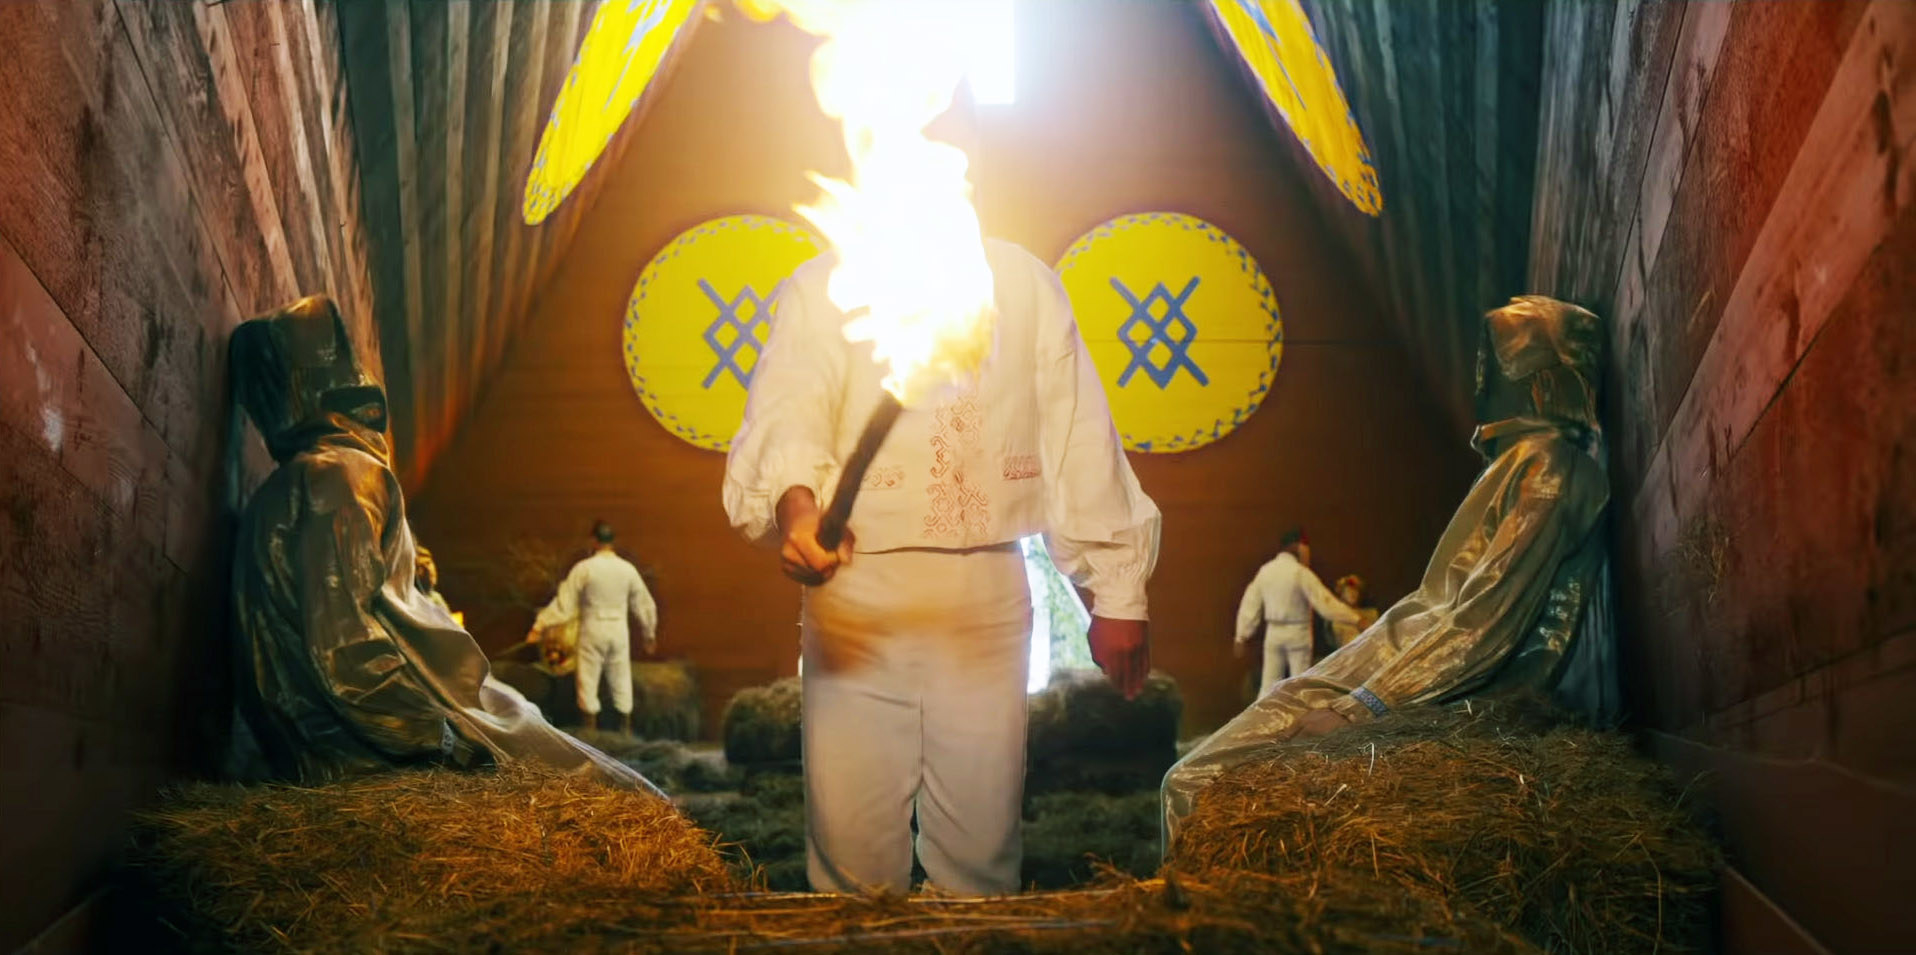 A man lights a chapel on fire